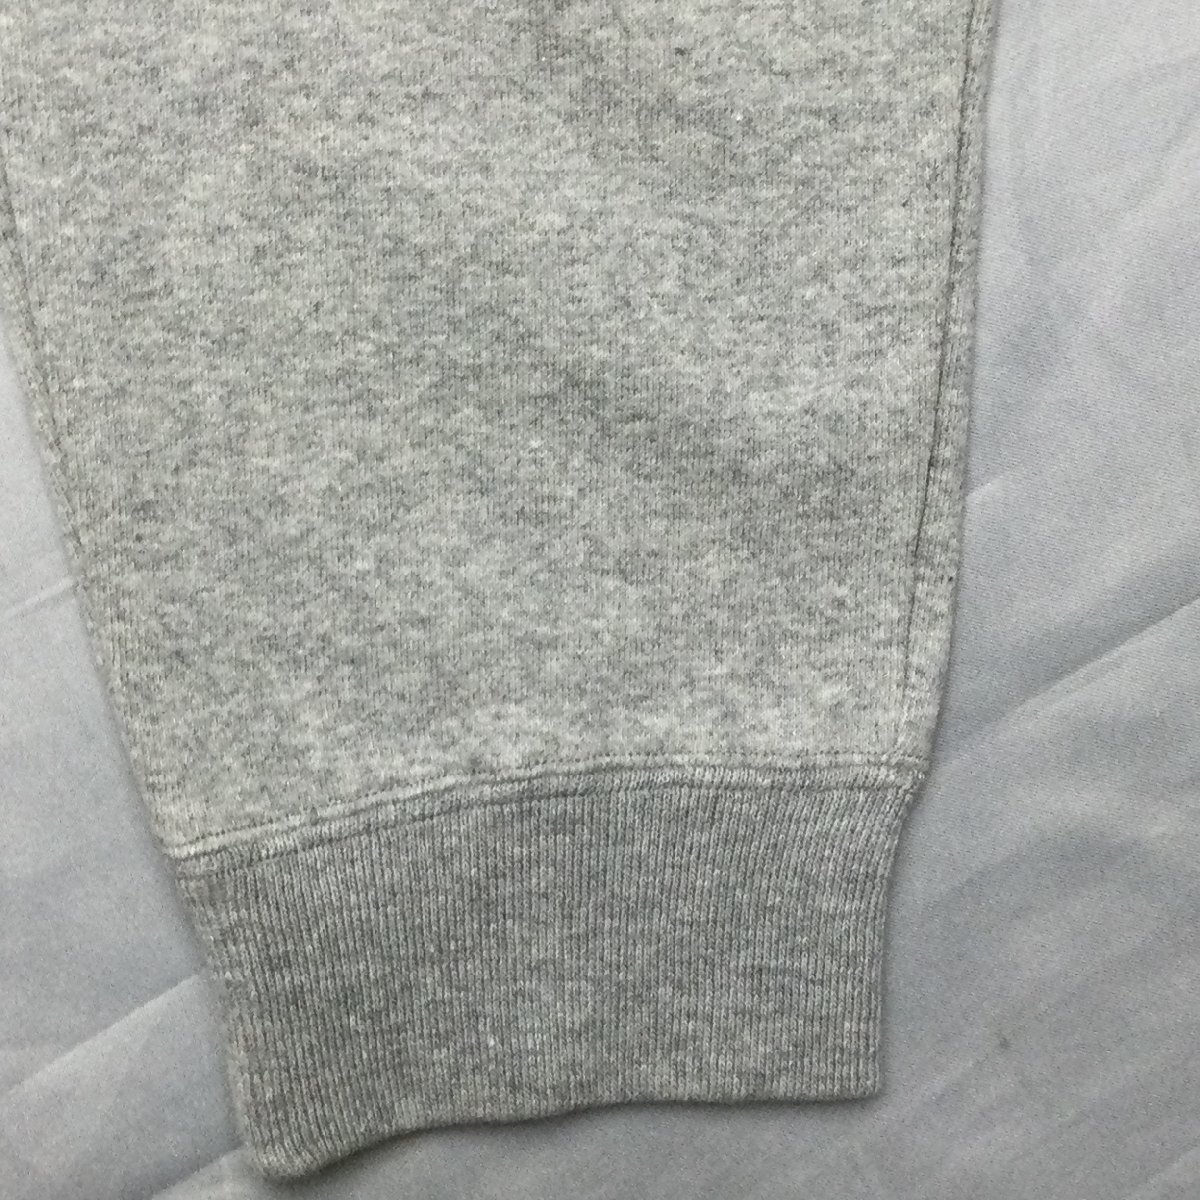 [ Hokkaido * Okinawa кроме бесплатная доставка ][ новый товар ]US.POLO.ASSN мужской футболка костюм ( сделано в Японии обратная сторона шерсть материалы хлопок 100%) M HGY*23332